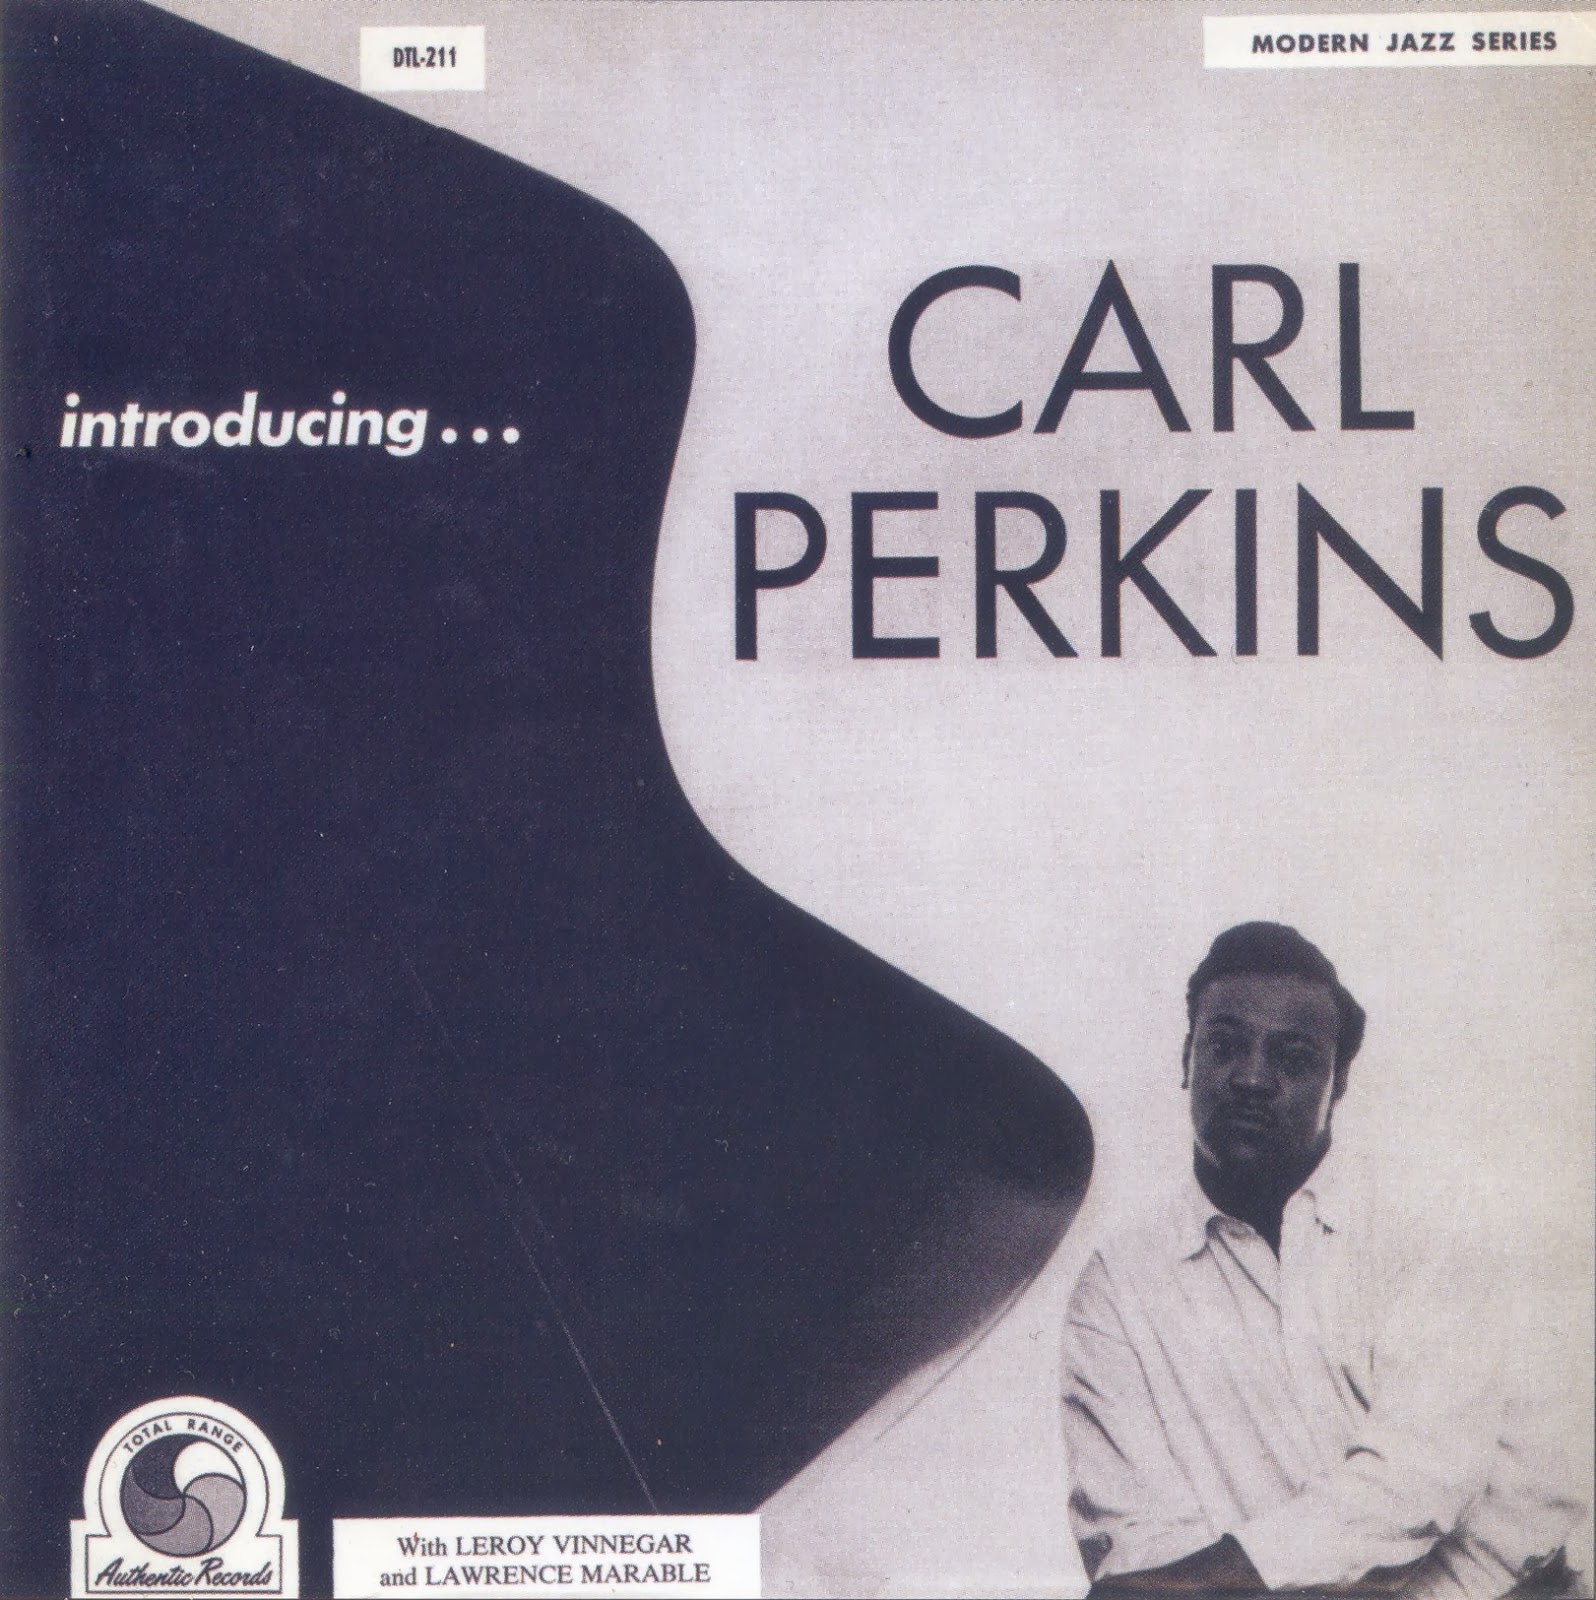 CARL PERKINS - Introducing... cover 